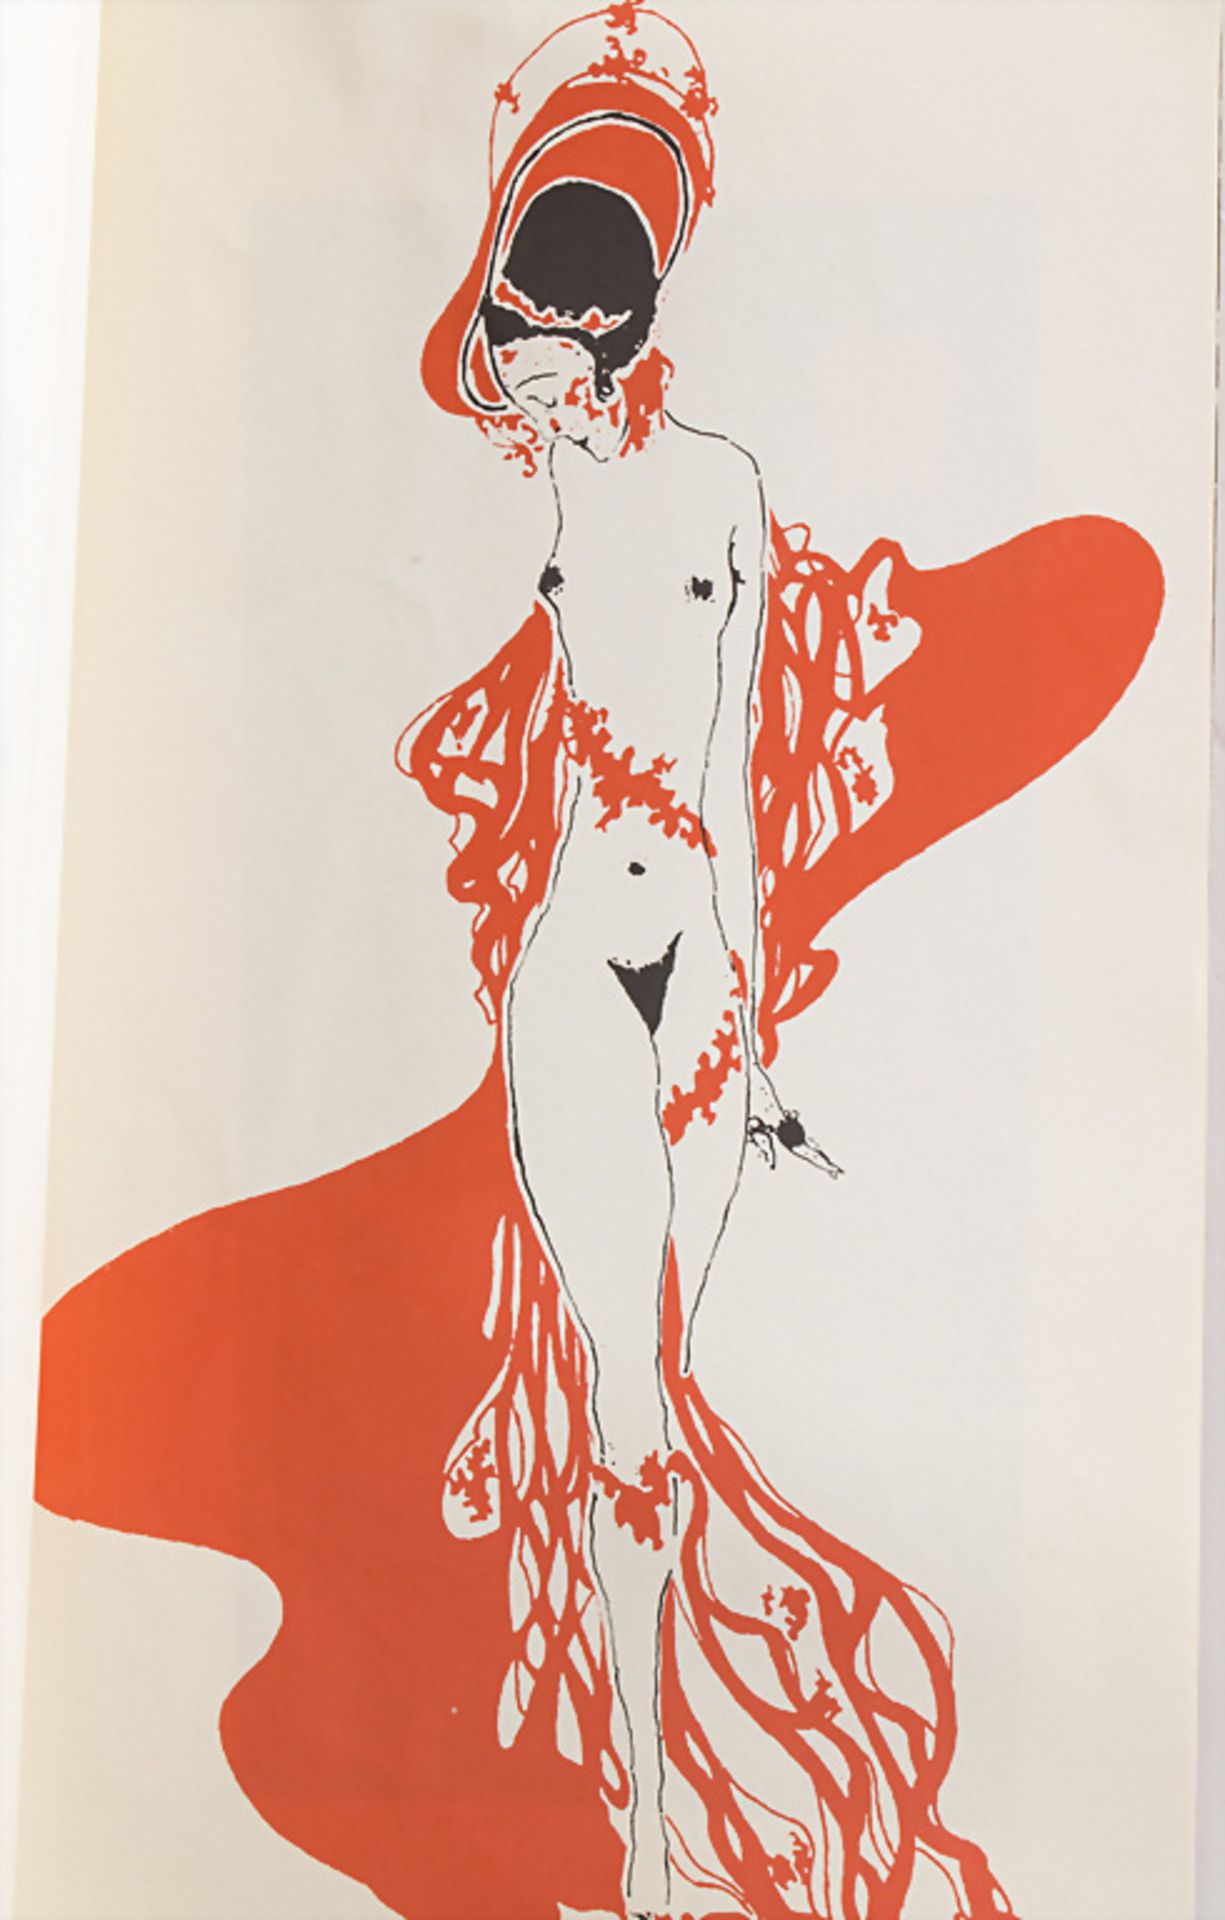 Jugendstil Sammlung Kunstblätter / A collection of Art Nouveau art prints - Image 4 of 4